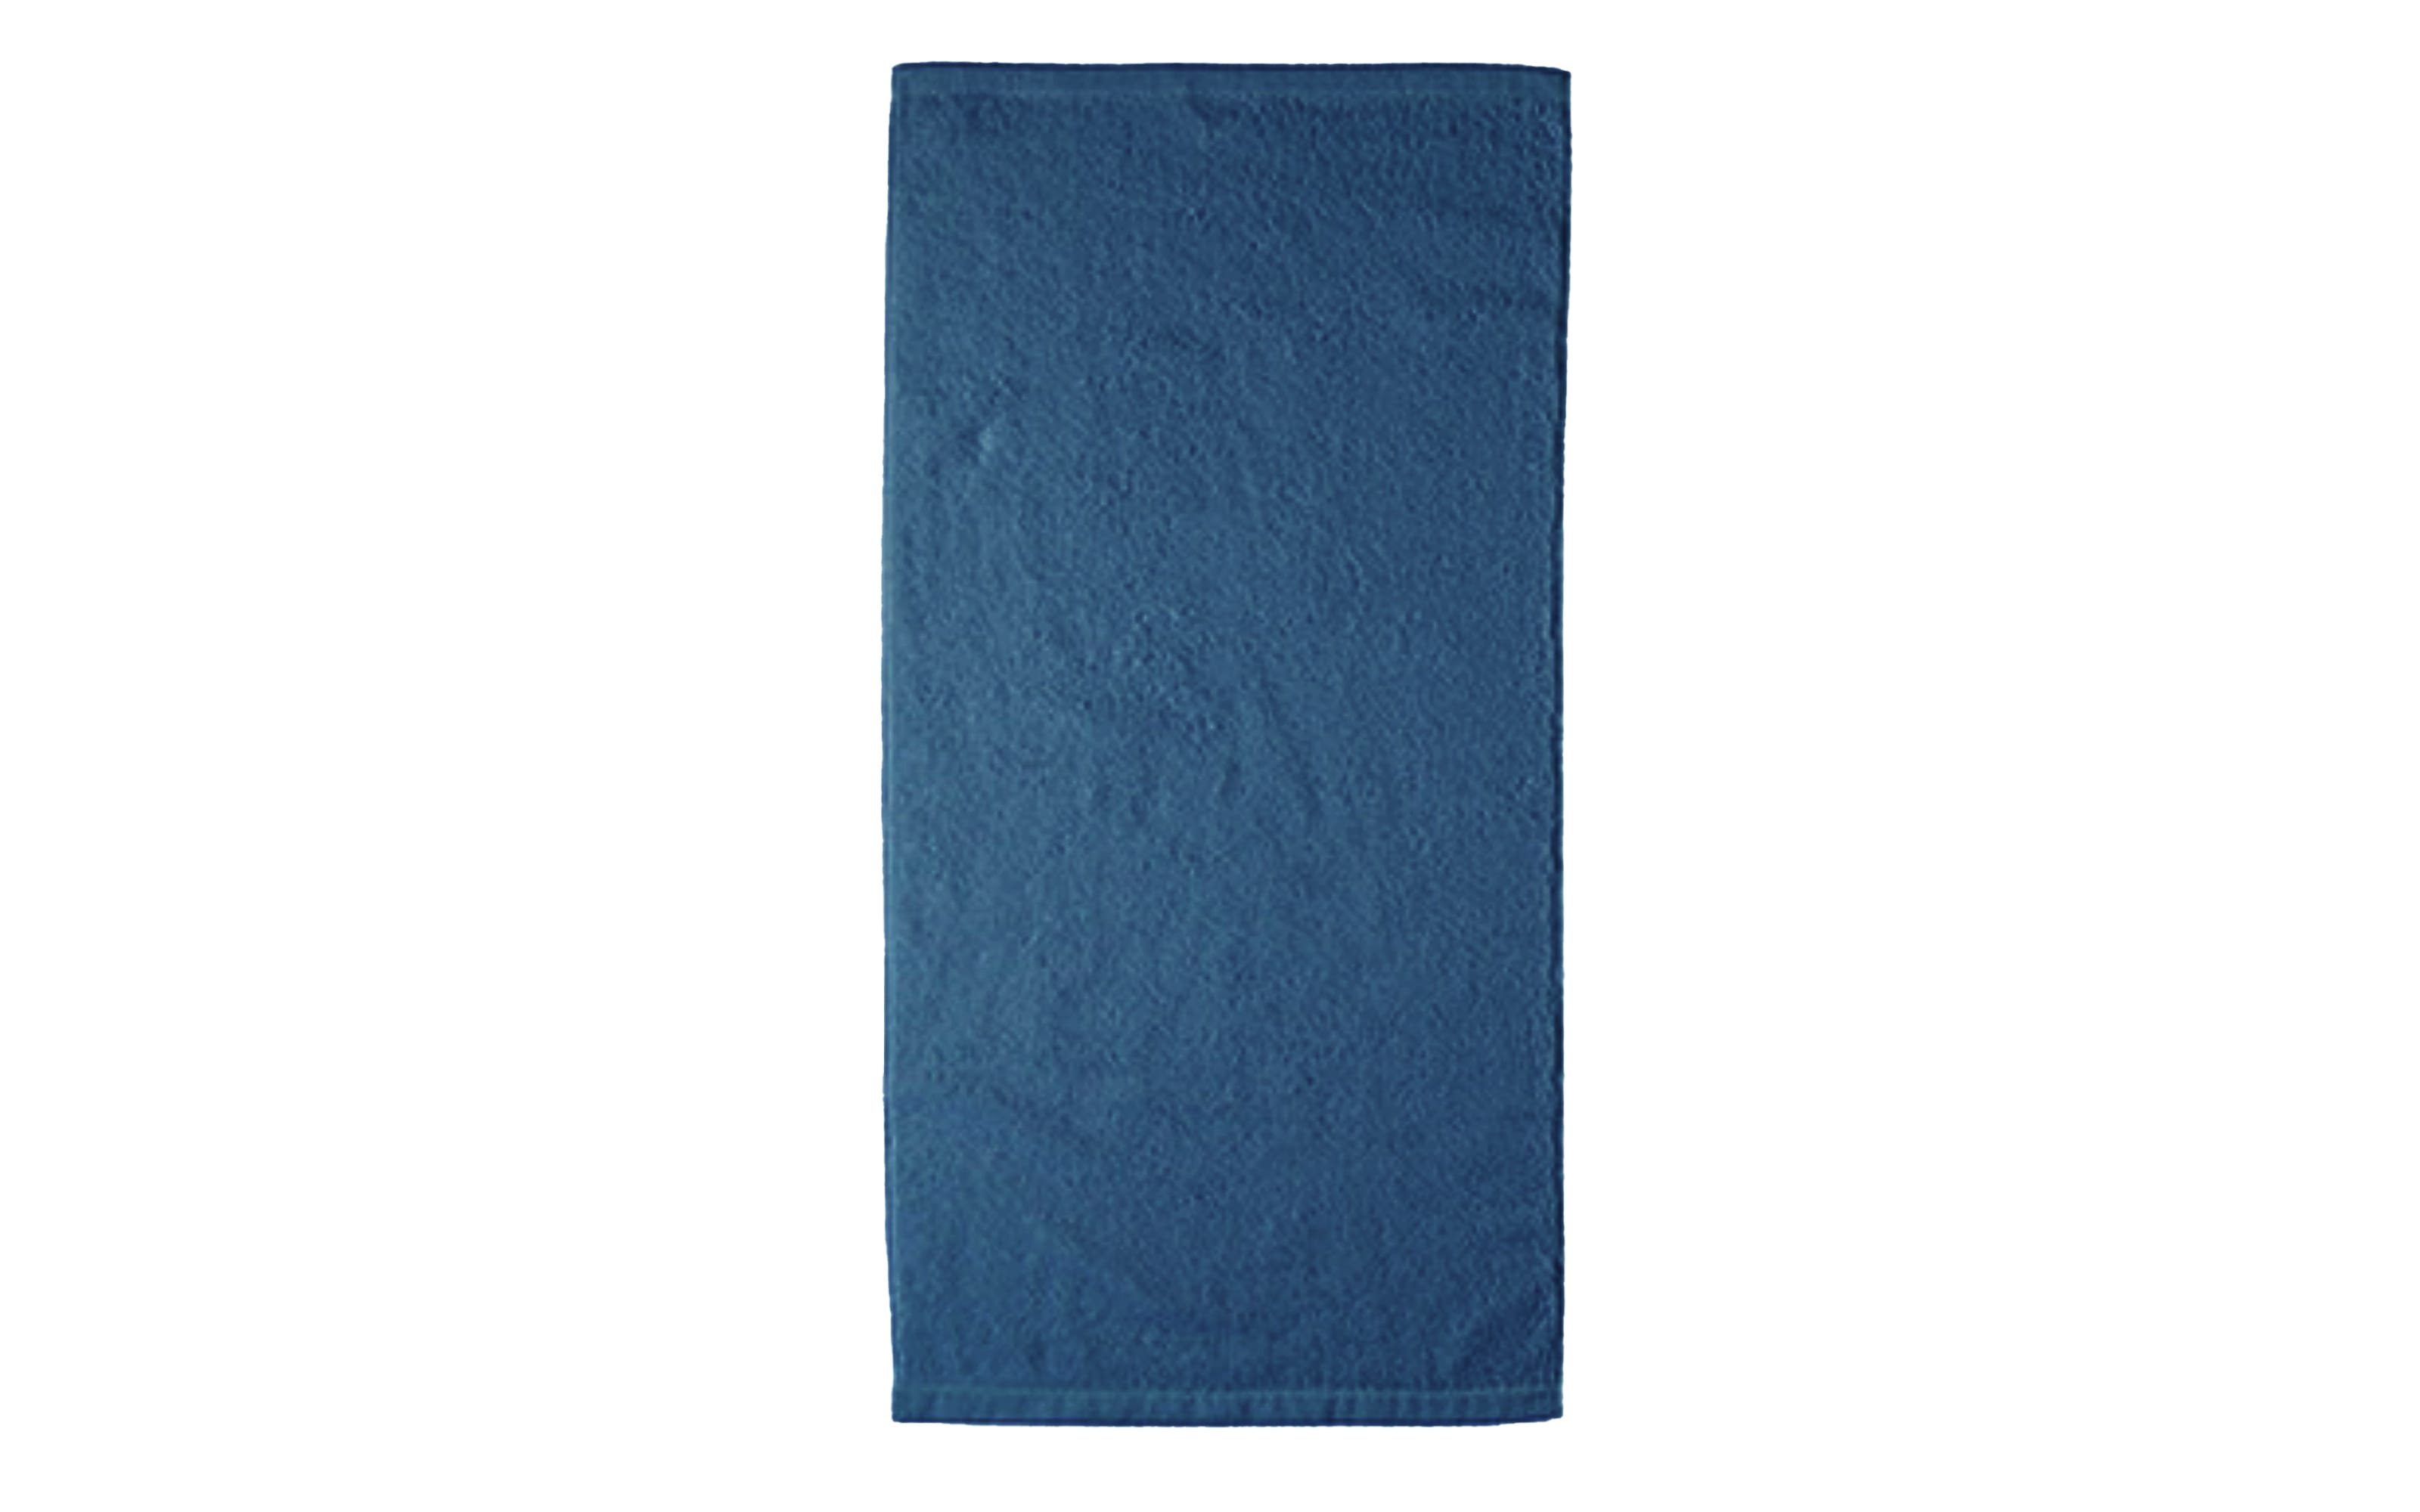 Duschtuch Lifestyle uni, nachtblau, 70 x 140 cm